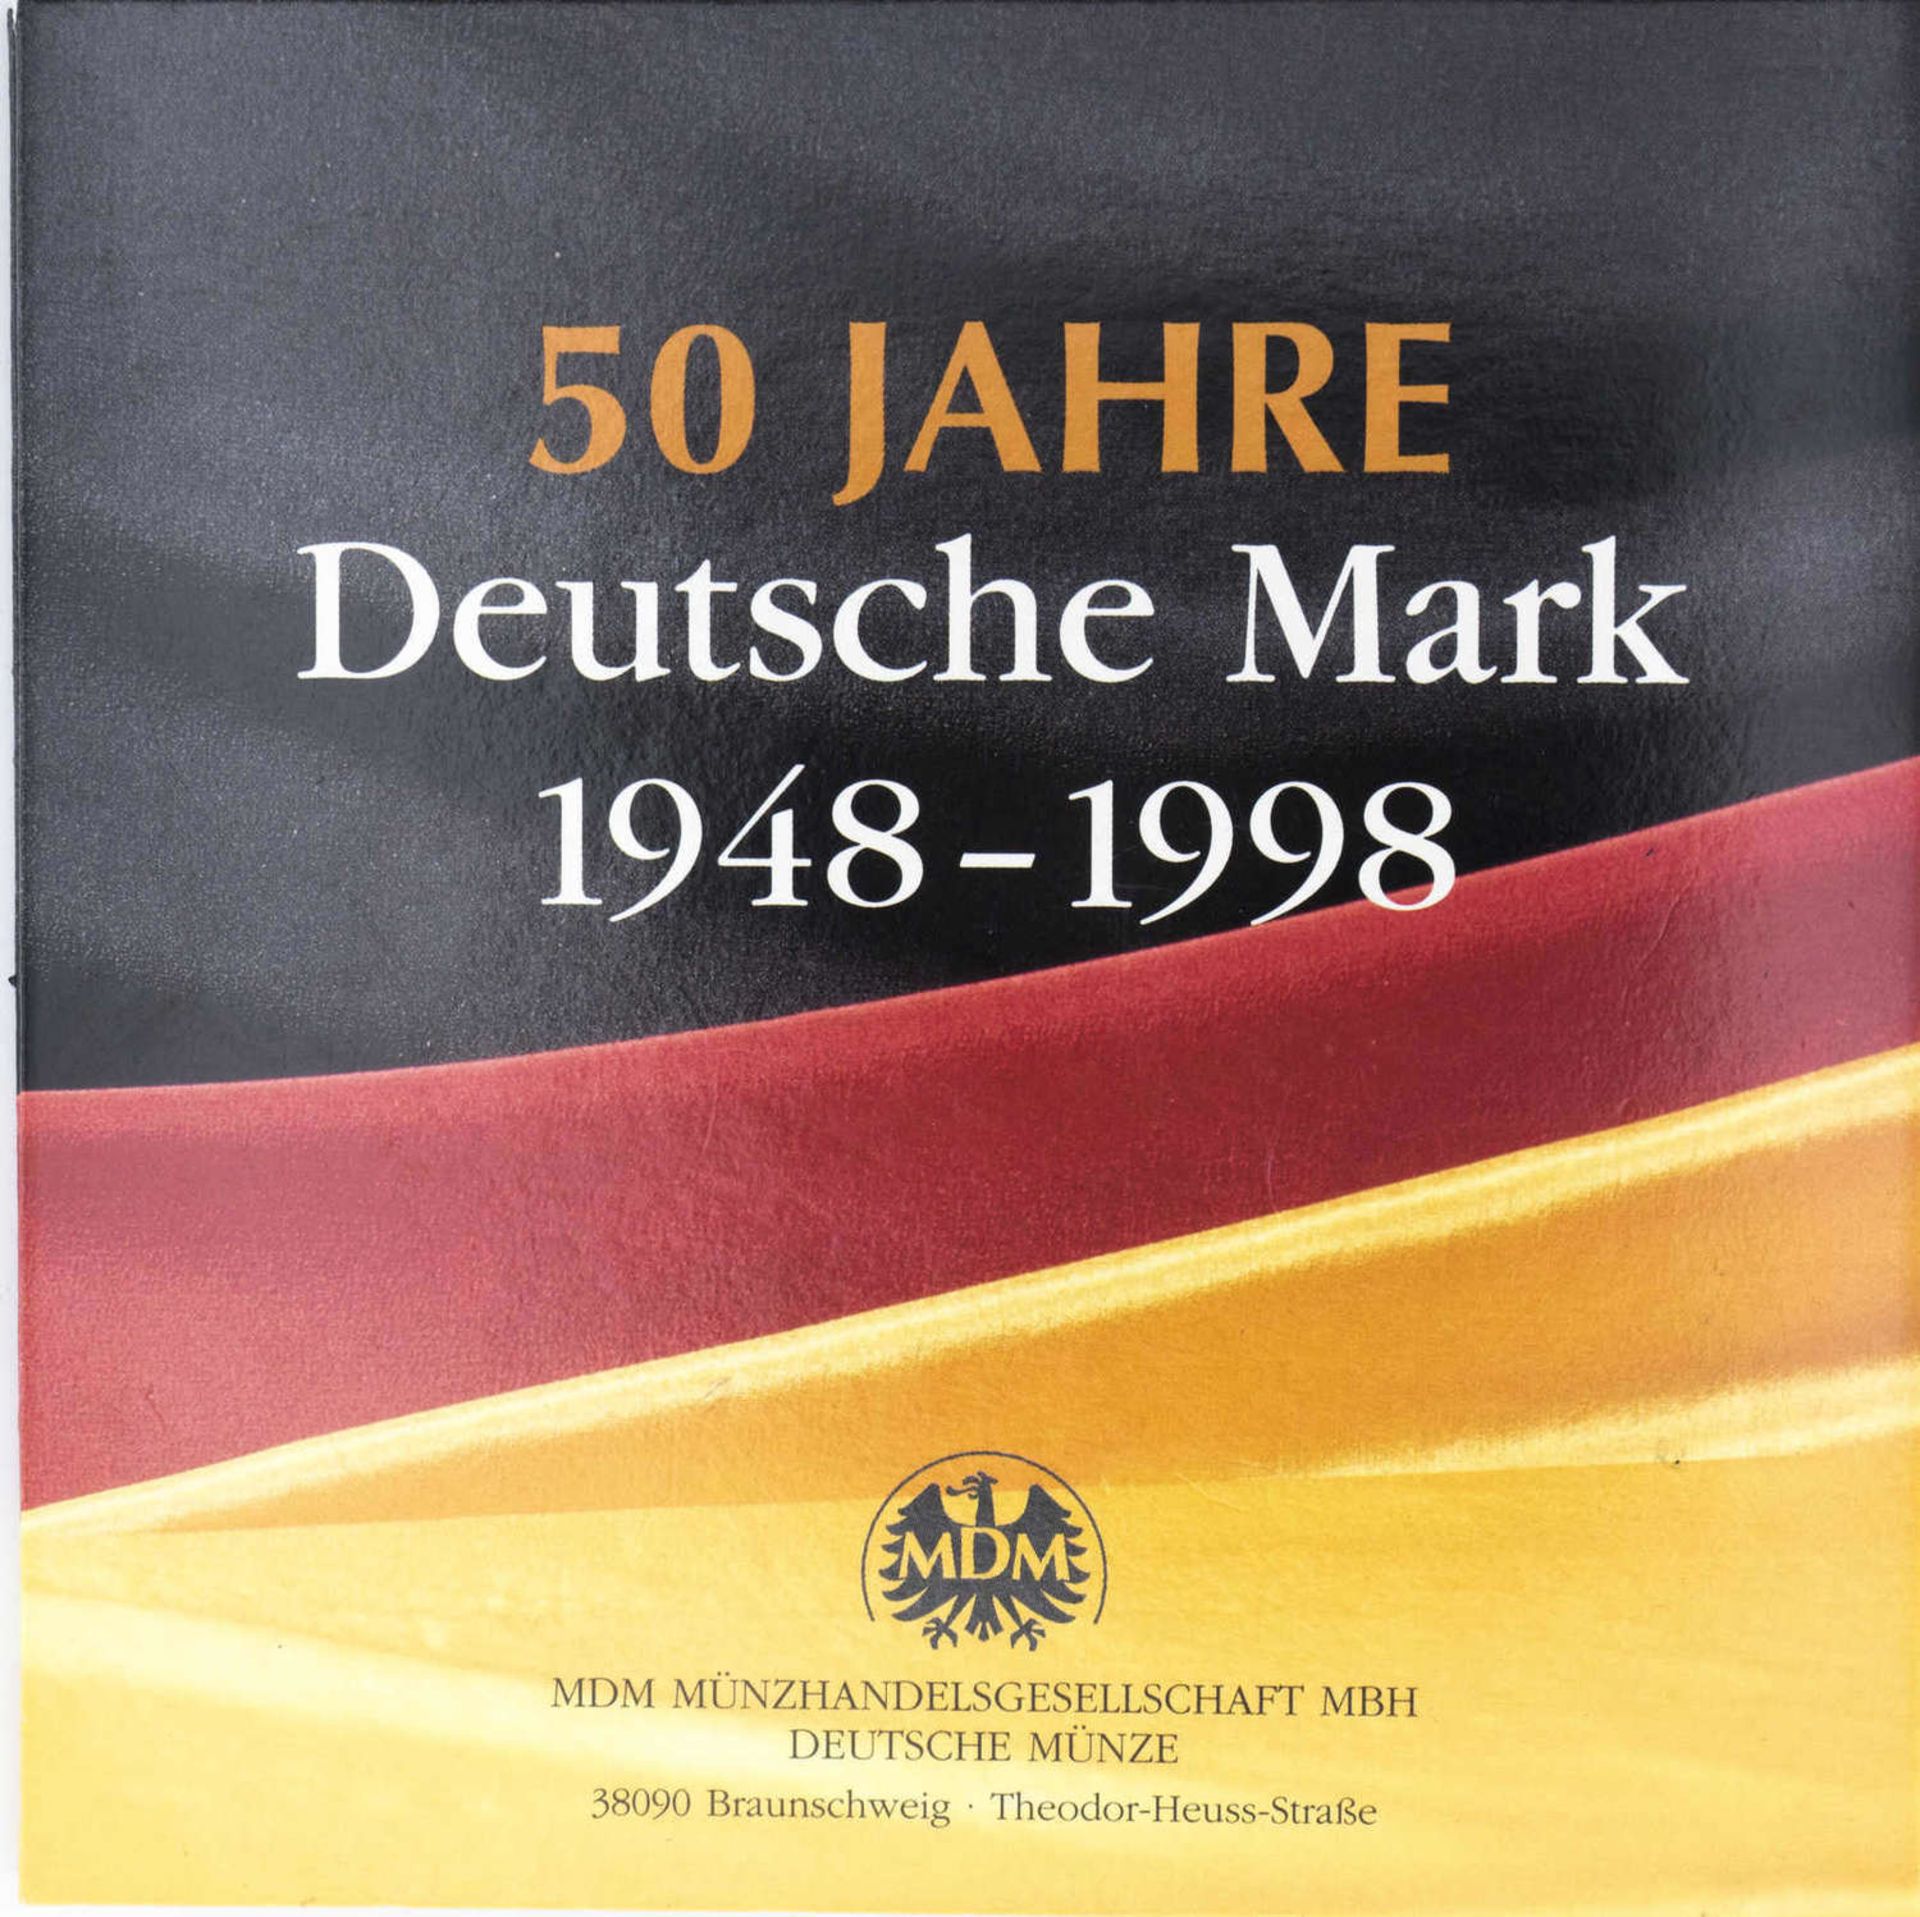 BRD 1998, Münzset "50 Jahre Deutsche Mark". Mit Gedenkmedaille. Erhaltung: stgl. - Image 3 of 3